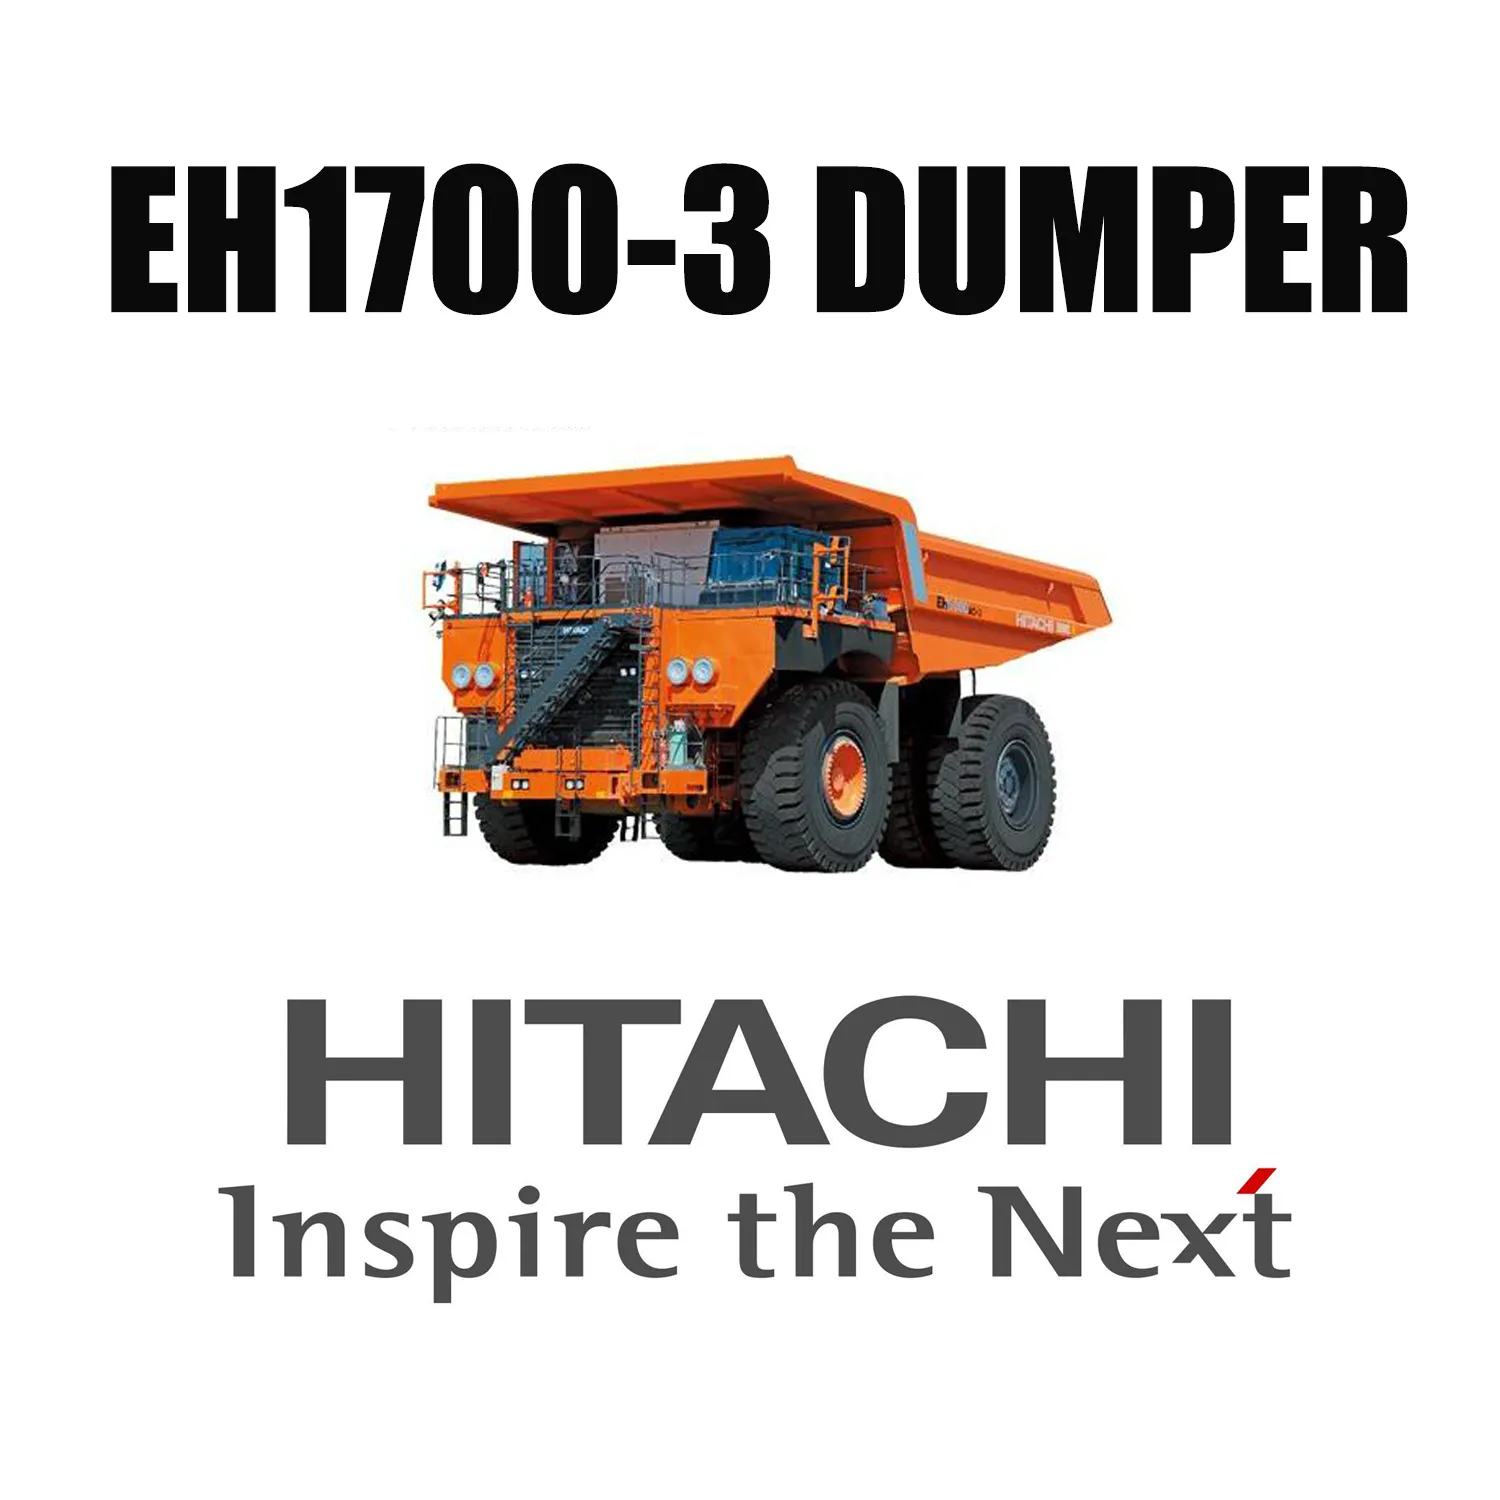 Caminhões de transporte Hitachi EH1700-3 equipados com pneus OTR gigantes LUAN 27.00R49